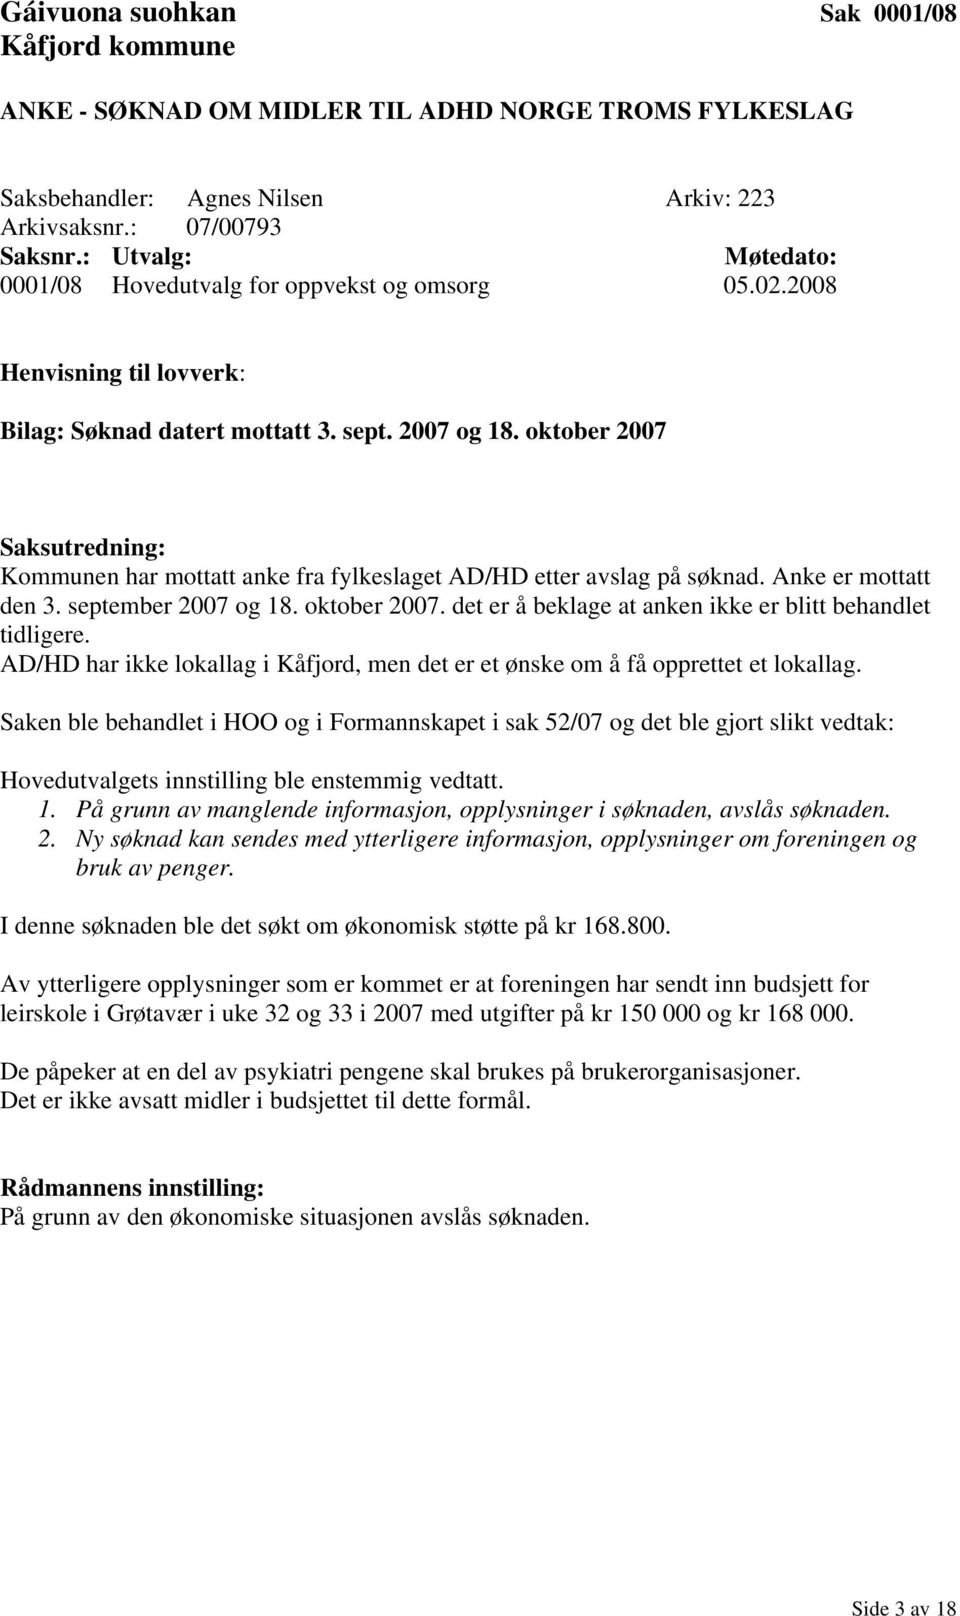 september 2007 og 18. oktober 2007. det er å beklage at anken ikke er blitt behandlet tidligere. AD/HD har ikke lokallag i Kåfjord, men det er et ønske om å få opprettet et lokallag.